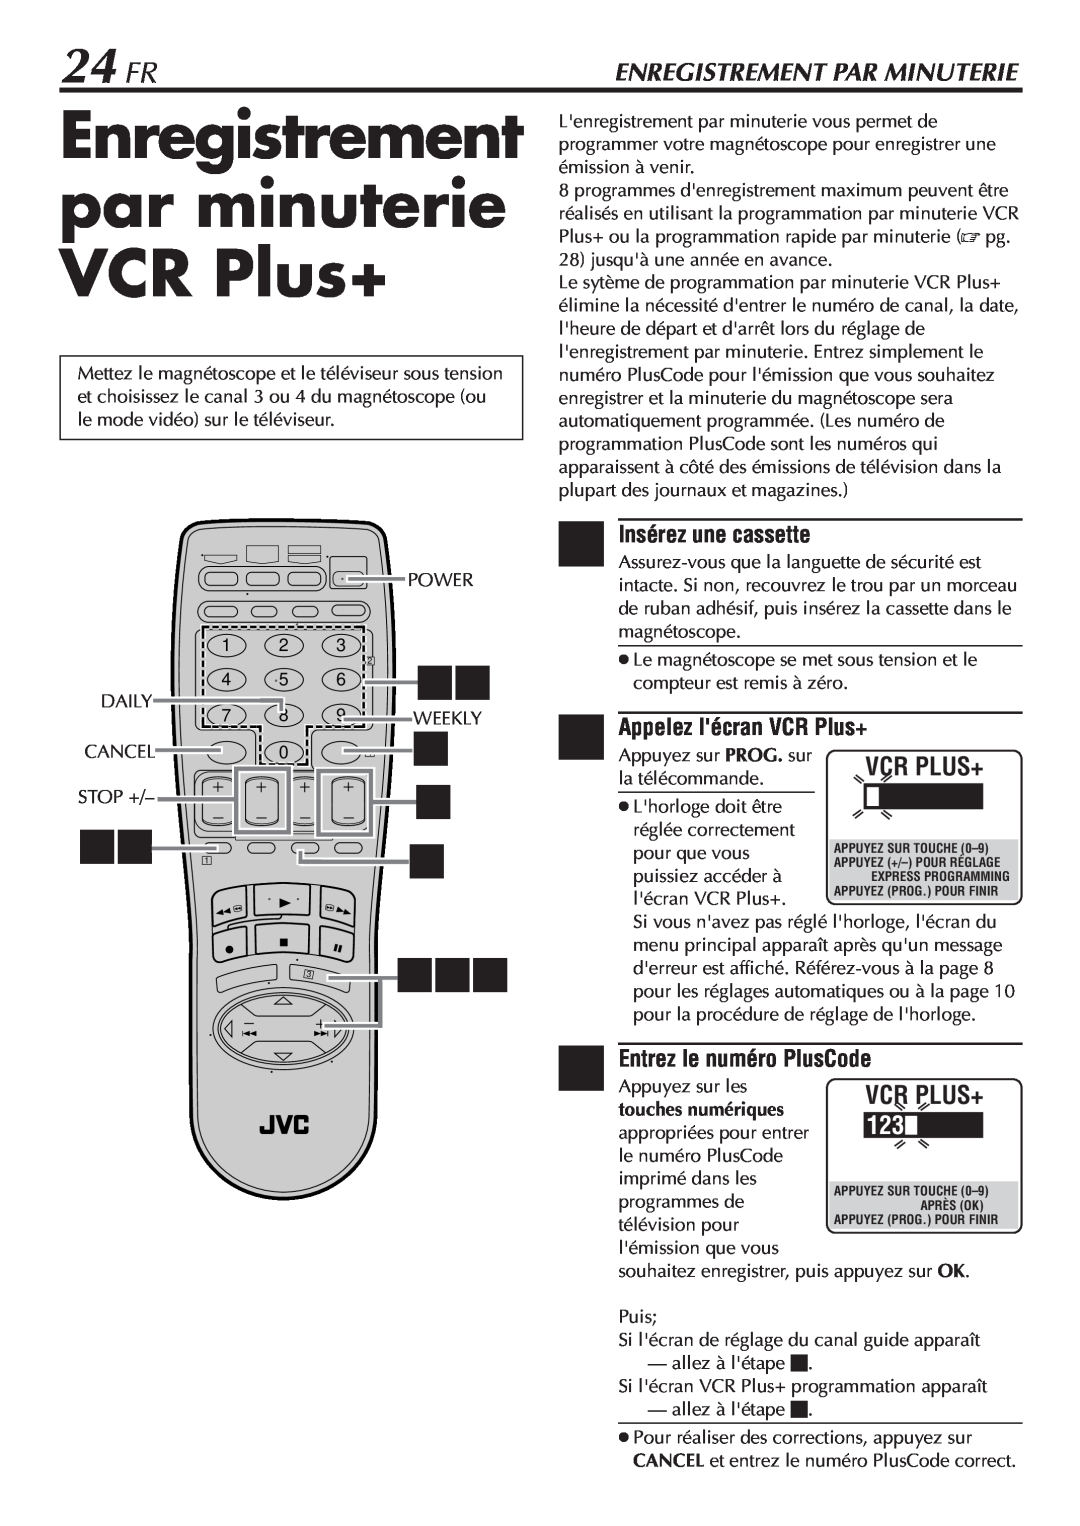 JVC HR-VP58U manual Enregistrement par minuterie VCR Plus+, 24 FR, Entrez le numéro PlusCode, Enregistrement Par Minuterie 